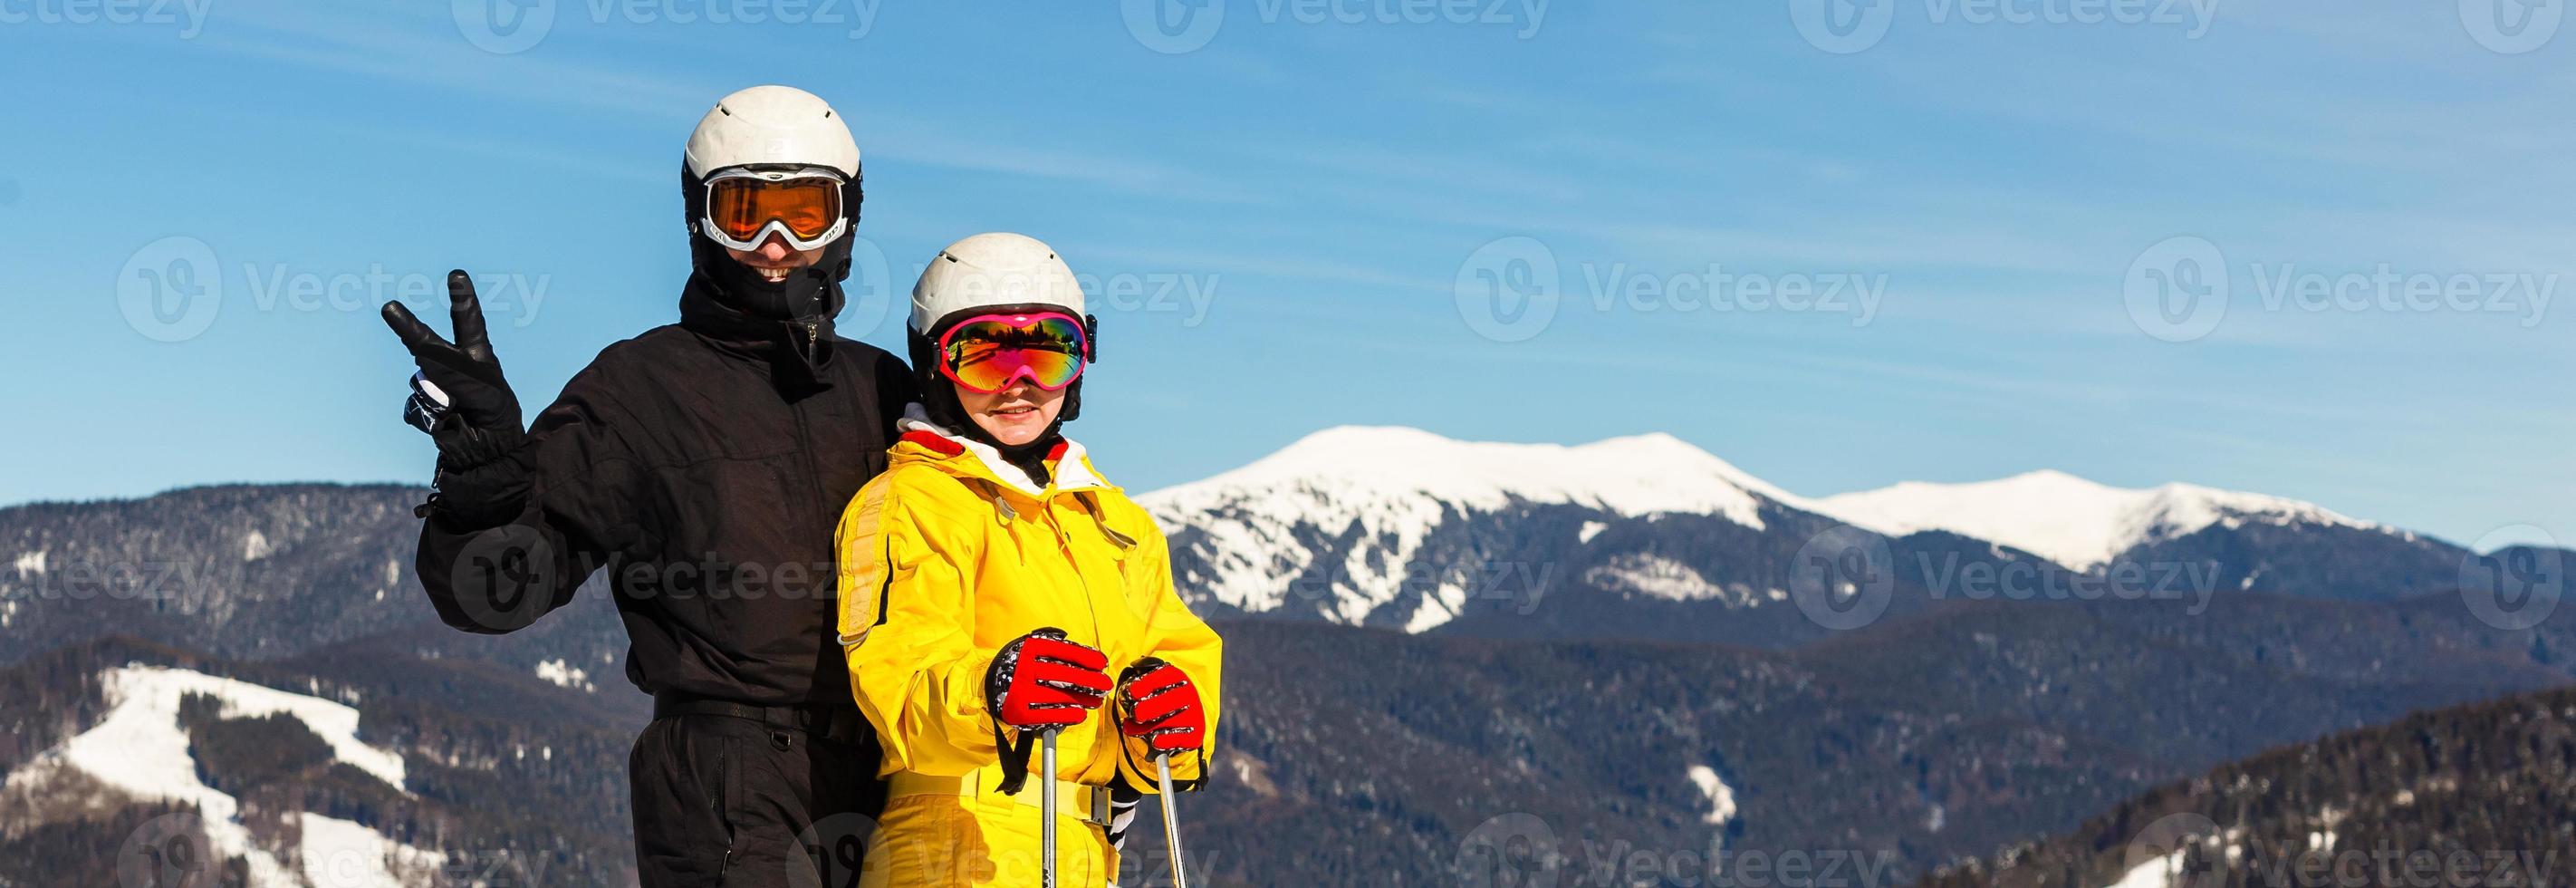 feliz hombre y mujer esquiadores contra el fondo de montañas nevadas foto